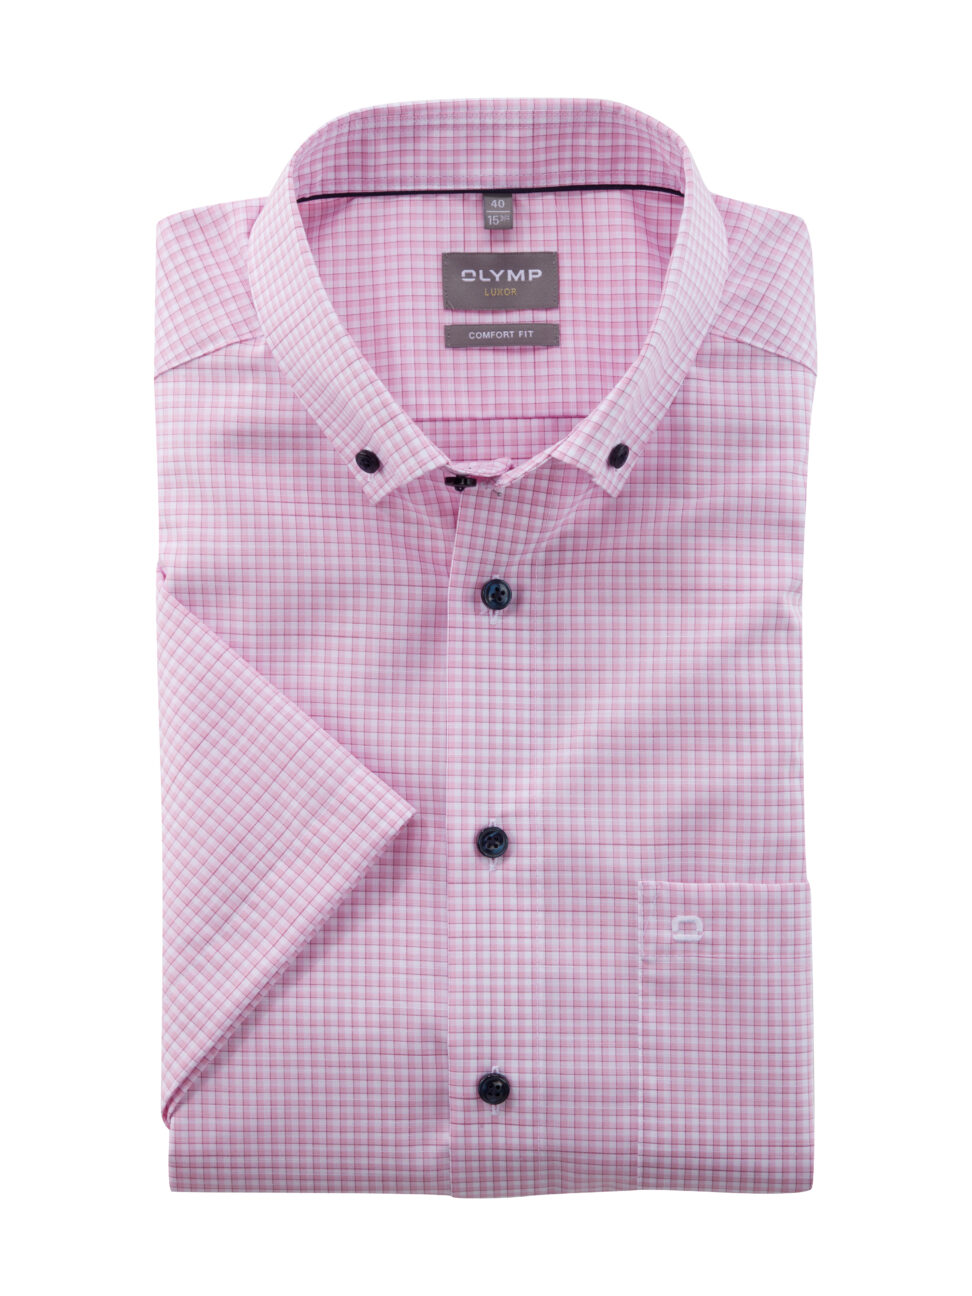 Koszula OLYMP Luxor comfort fit / Różowa kratka / Button-down / 10533230 krótki rękaw